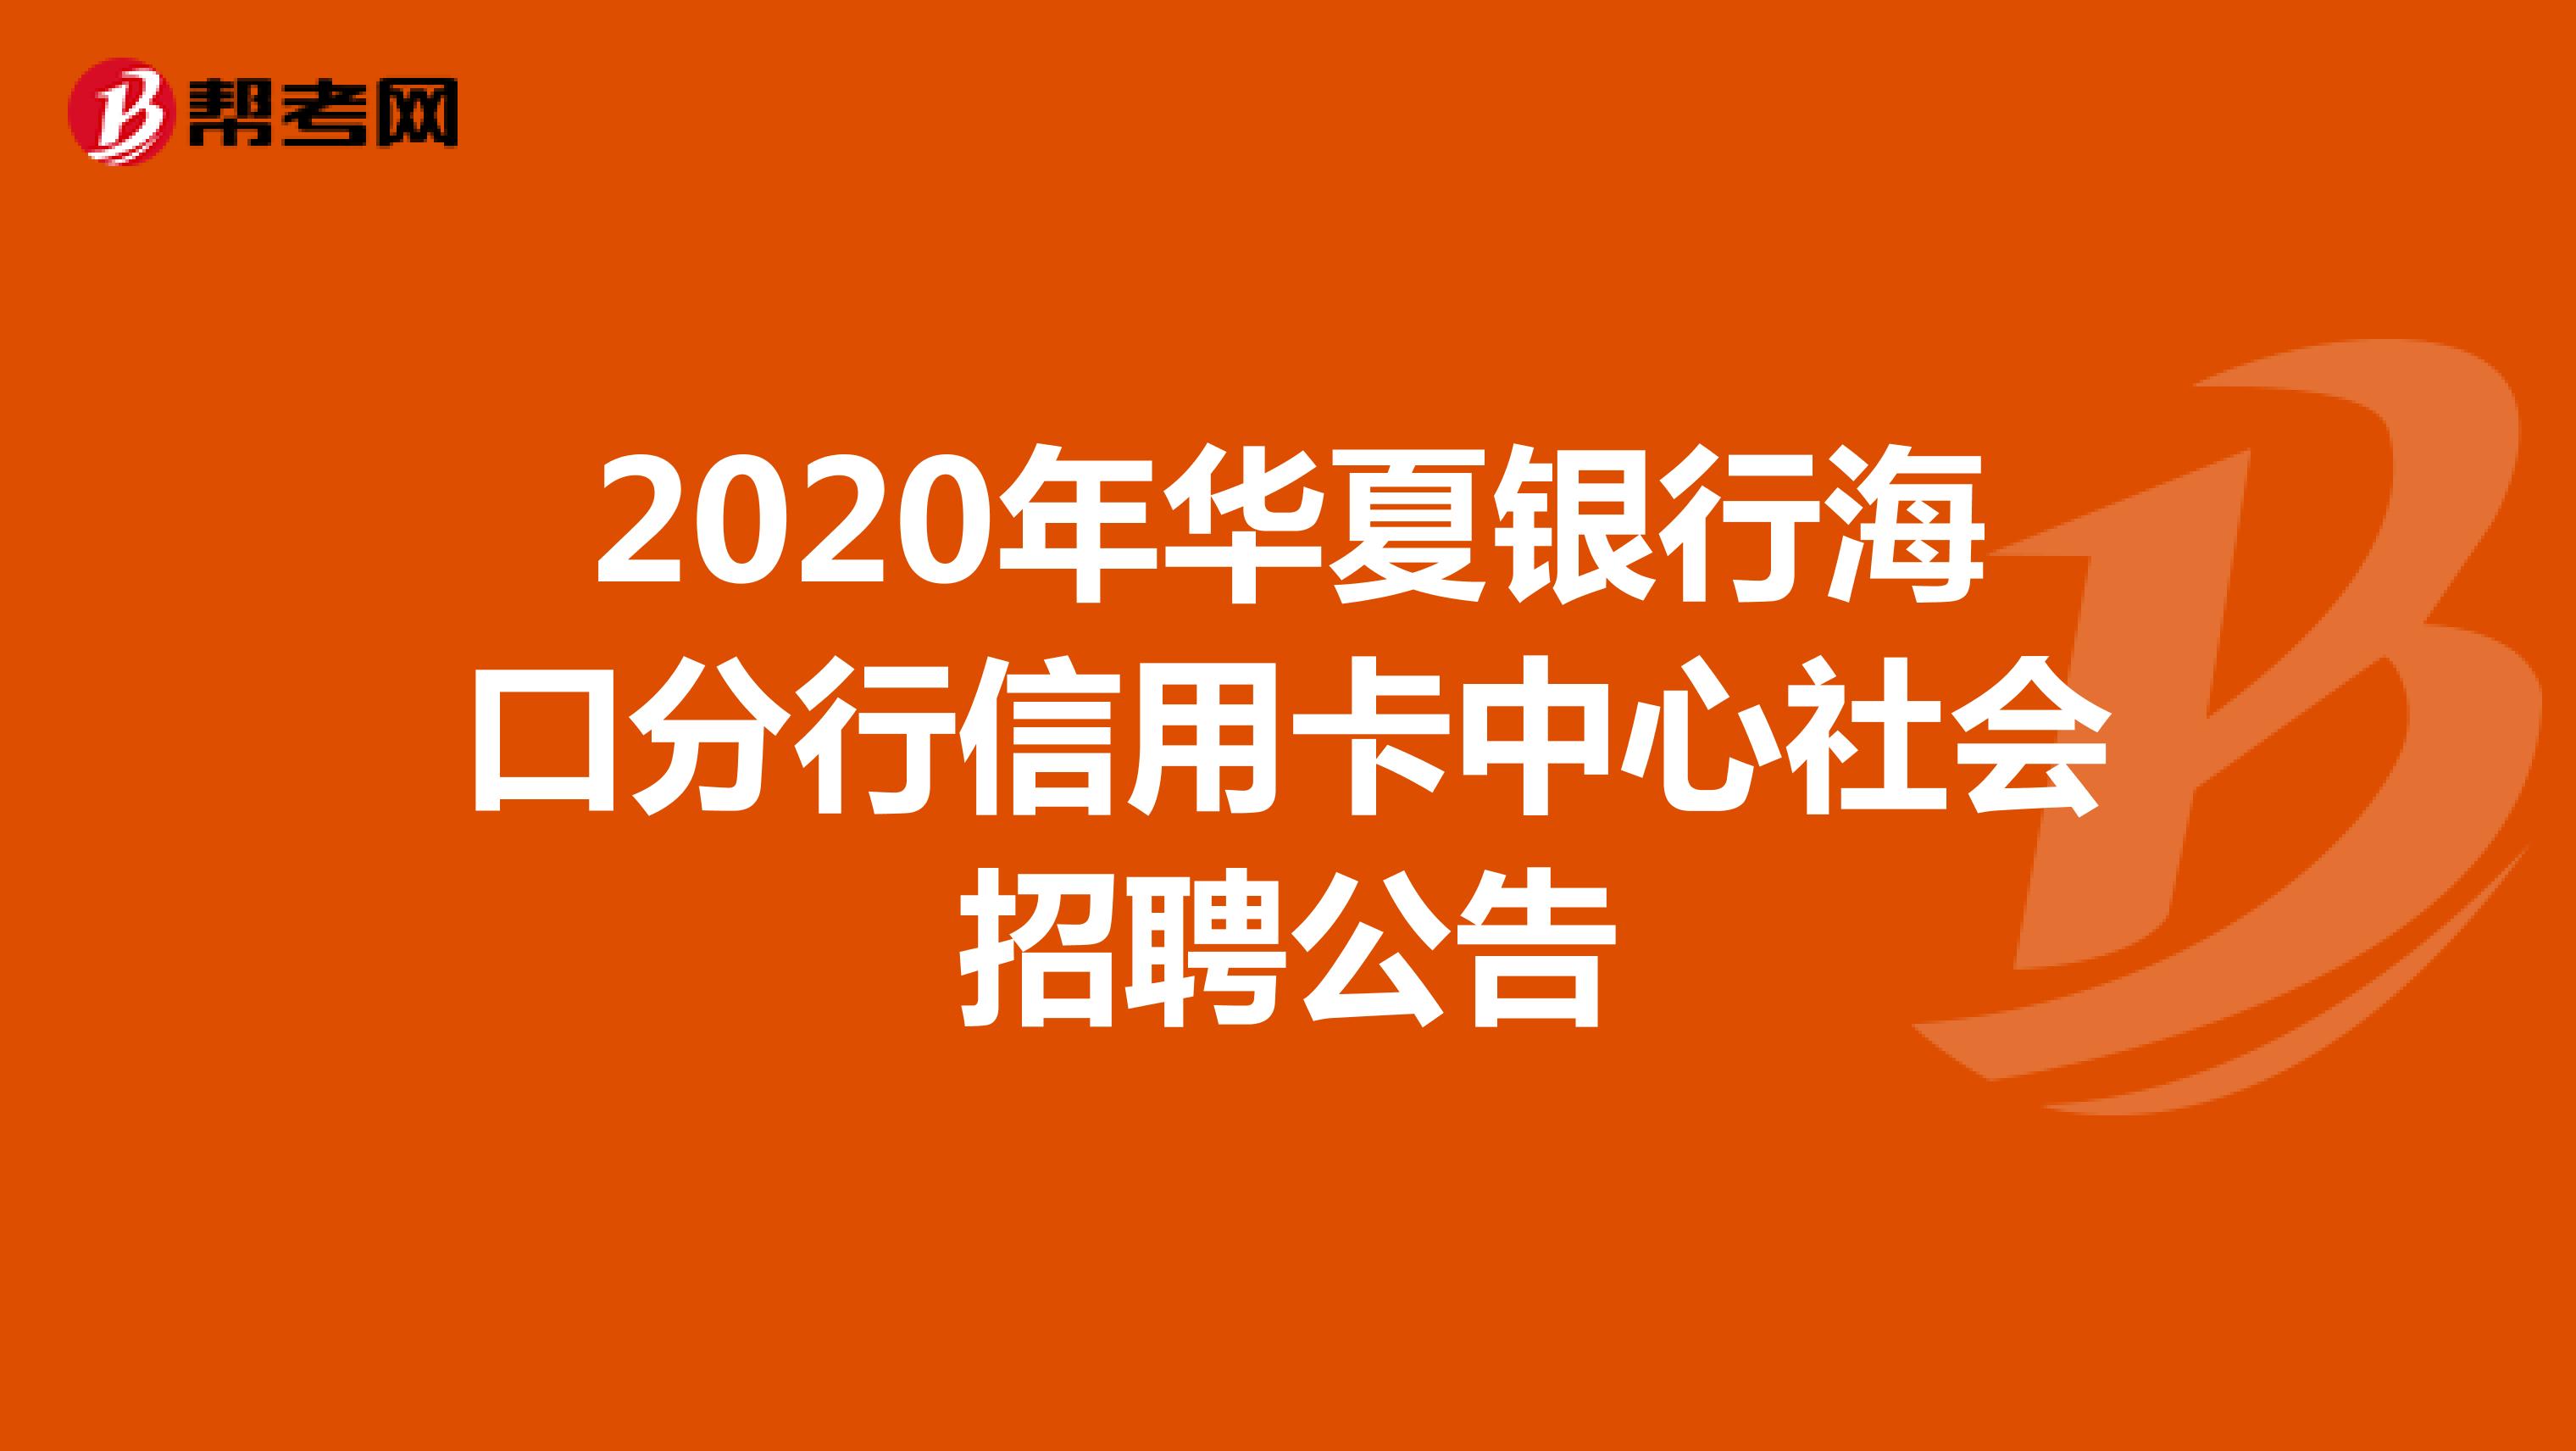 2020年华夏银行海口分行信用卡中心社会招聘公告